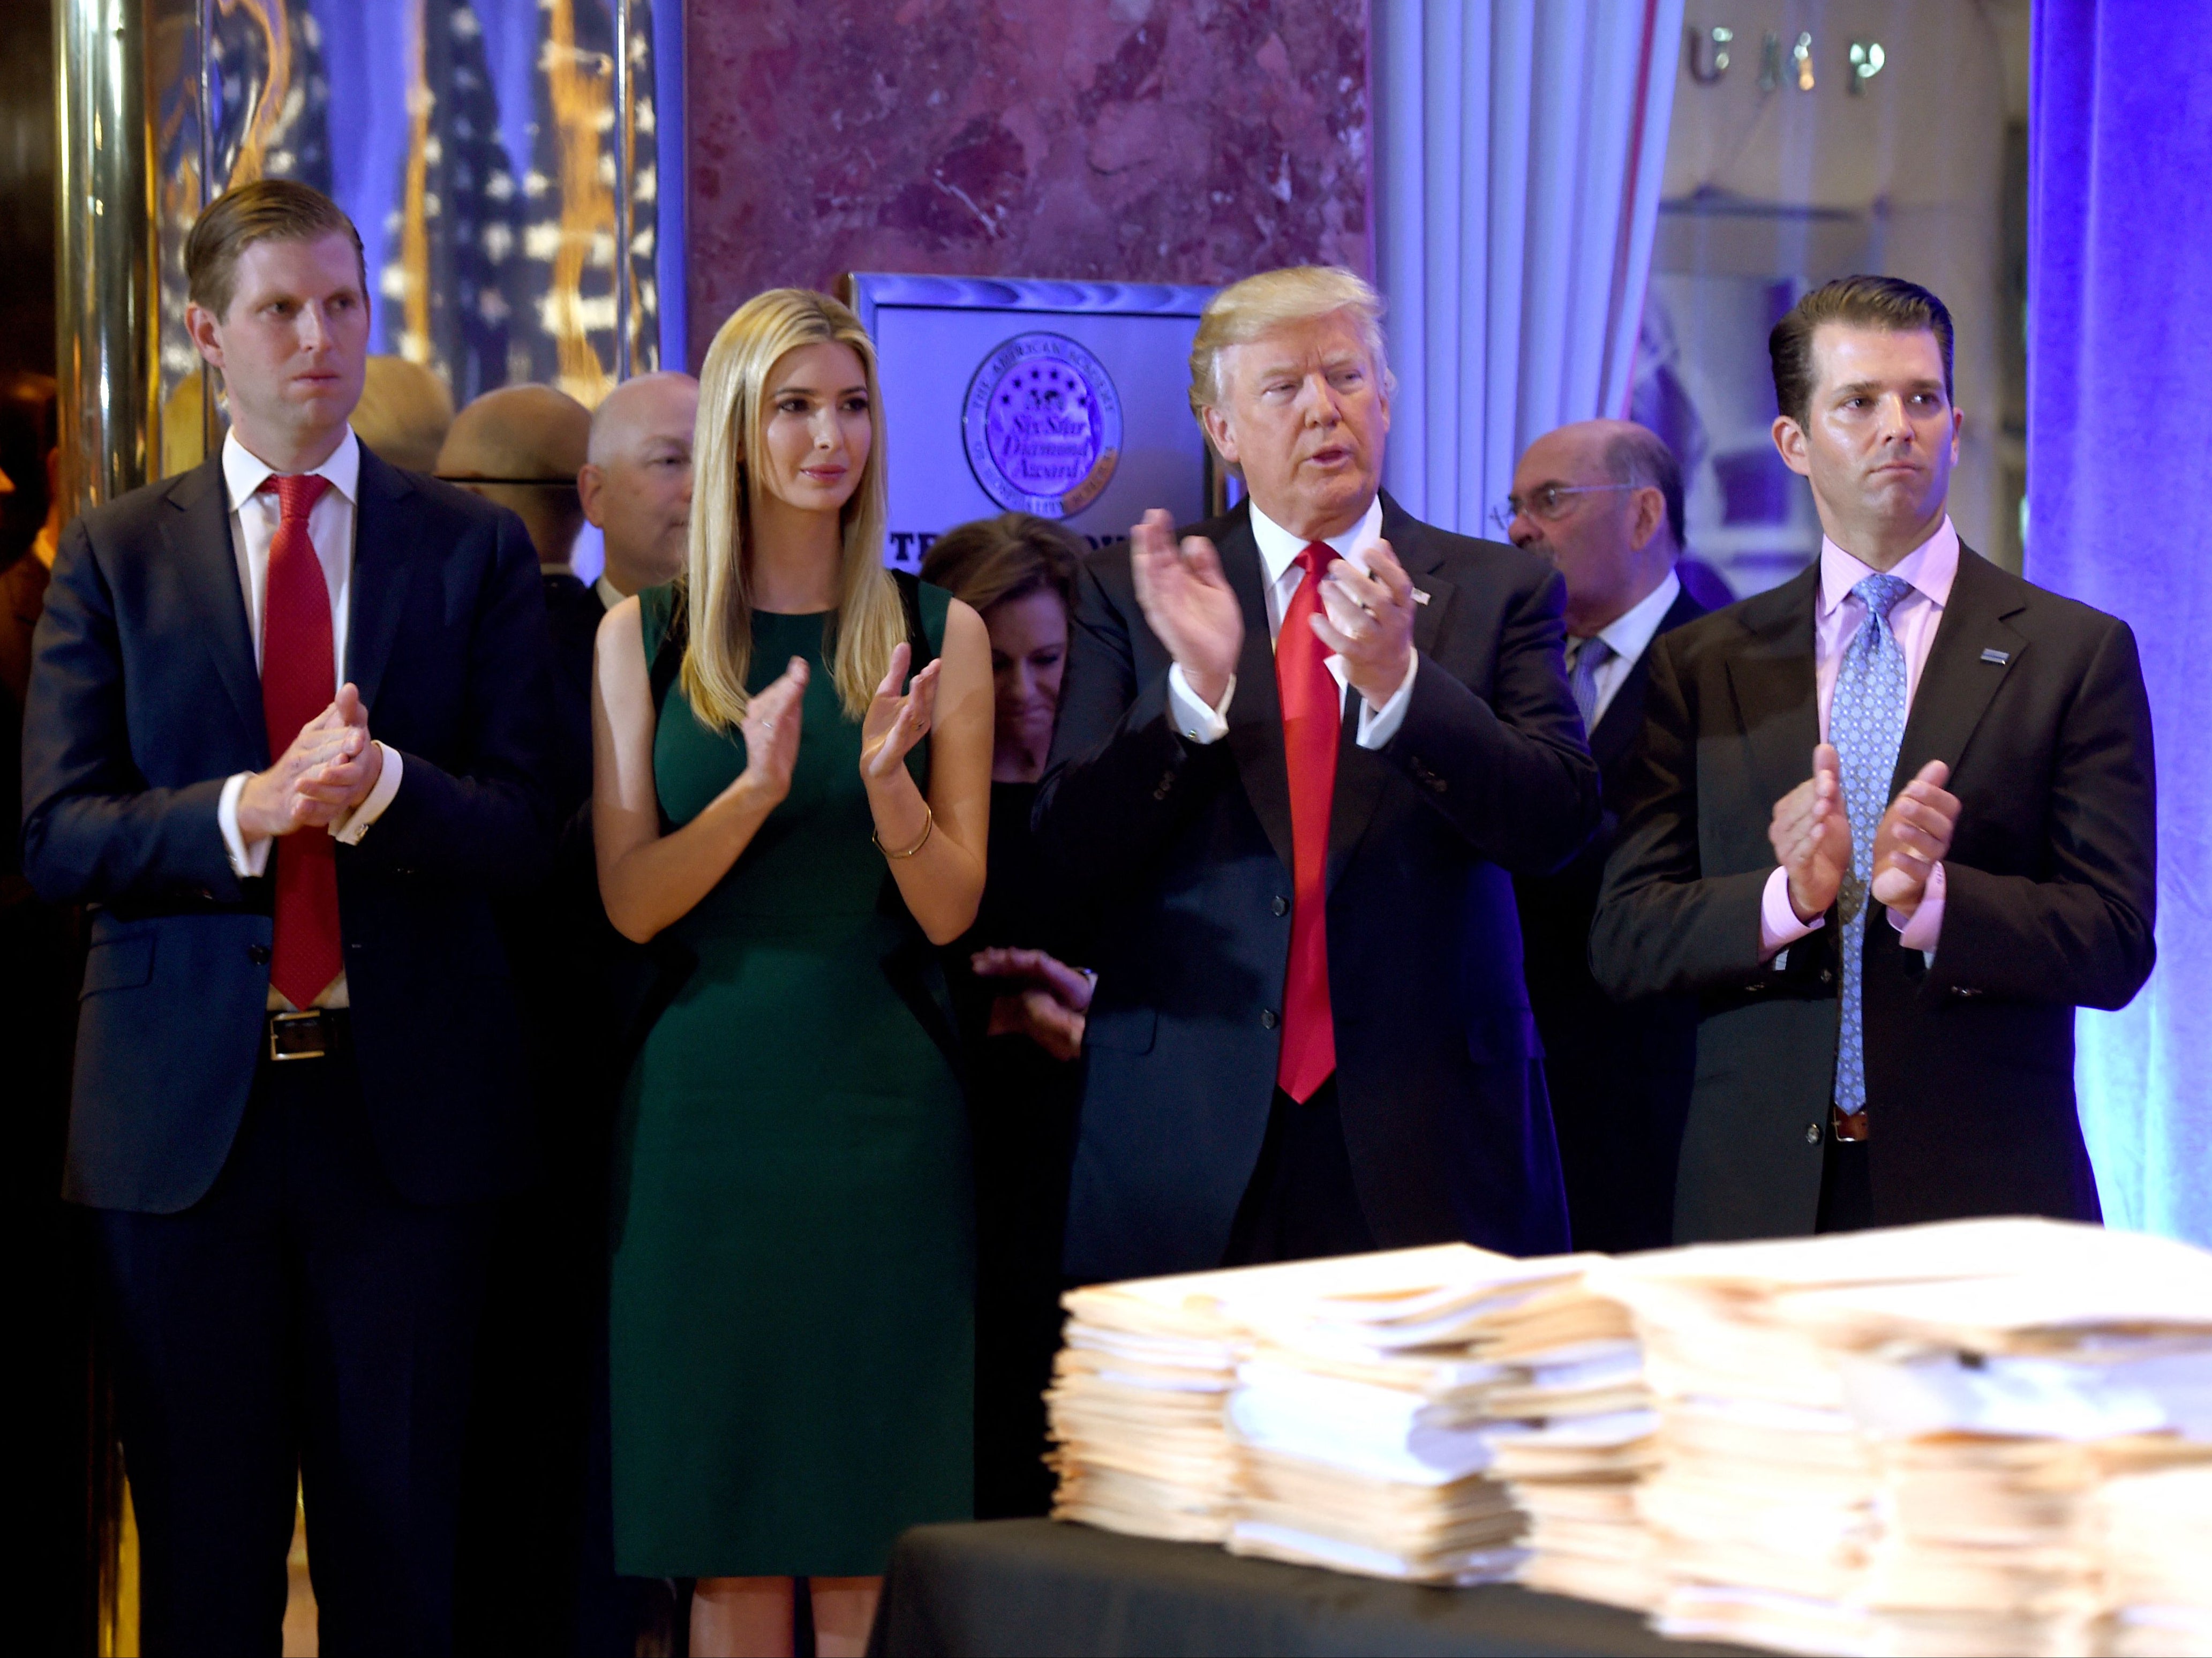 Donald Trump con sus hijos Eric, Ivanka y Donald Jr. llegan a una conferencia de prensa el 11 de enero de 2017 en la Torre Trump.